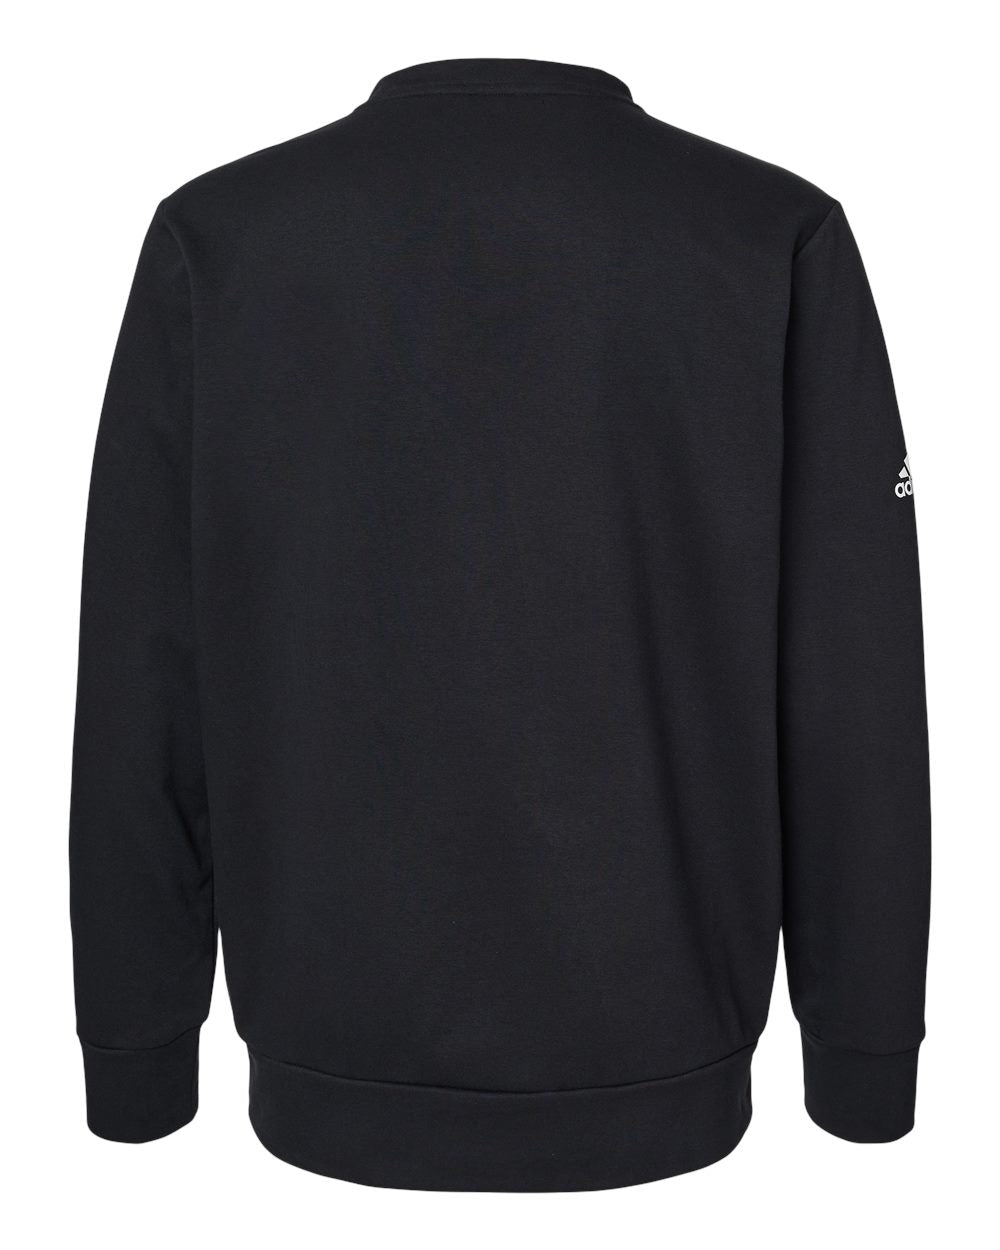 Adidas A434 Fleece Crewneck Sweatshirt #color_Black